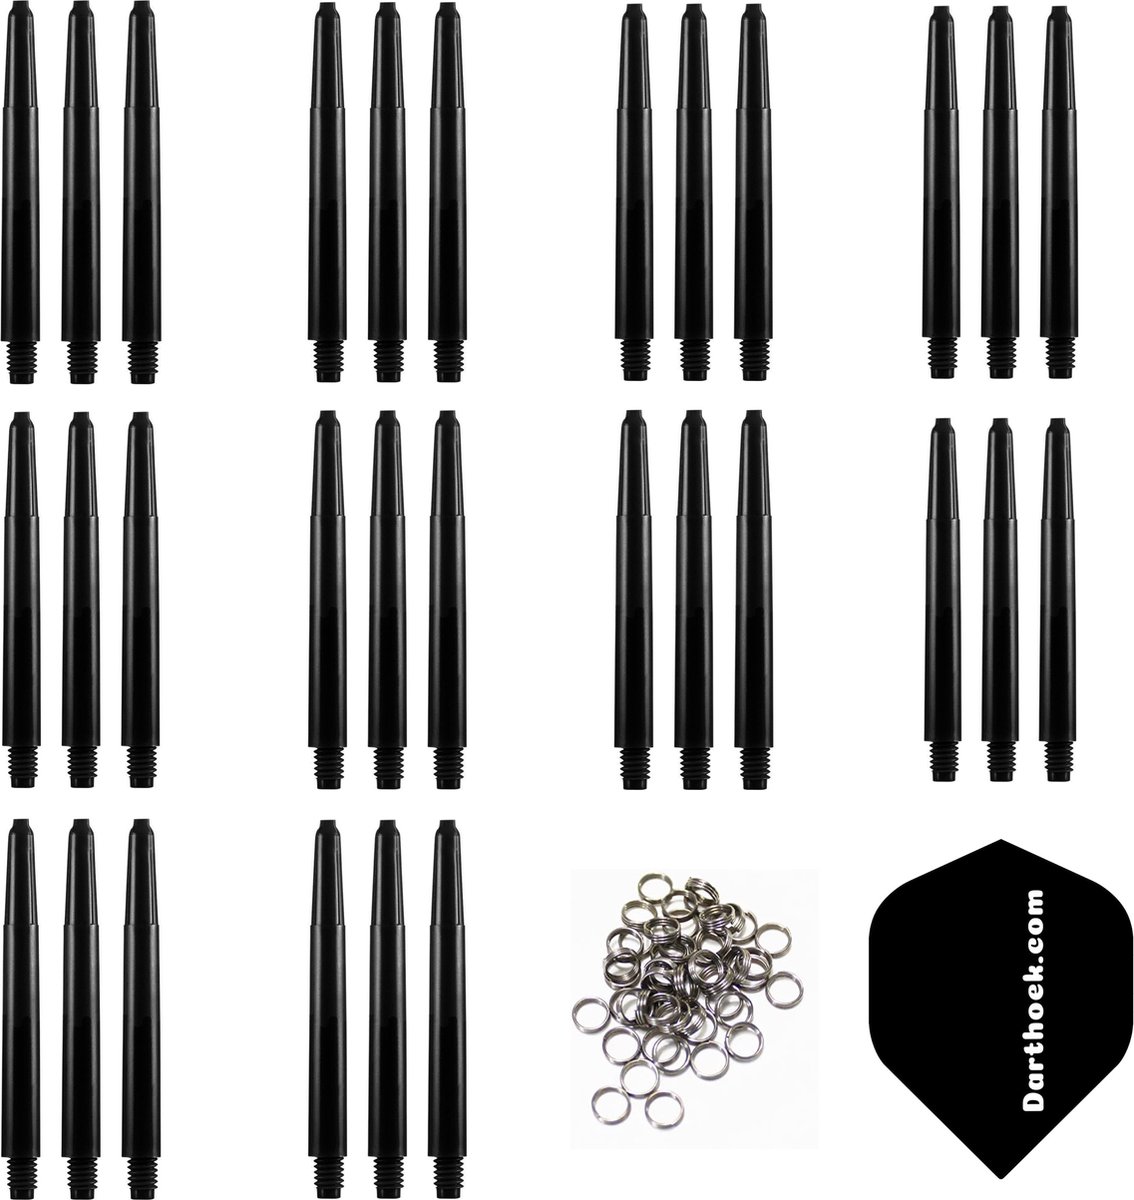 Darthoek zwarte dart shafts| 10 sets (30 stuks) |Inbetween | + 10 sets (30 stuks) veerringen + 1 set darthoek flights